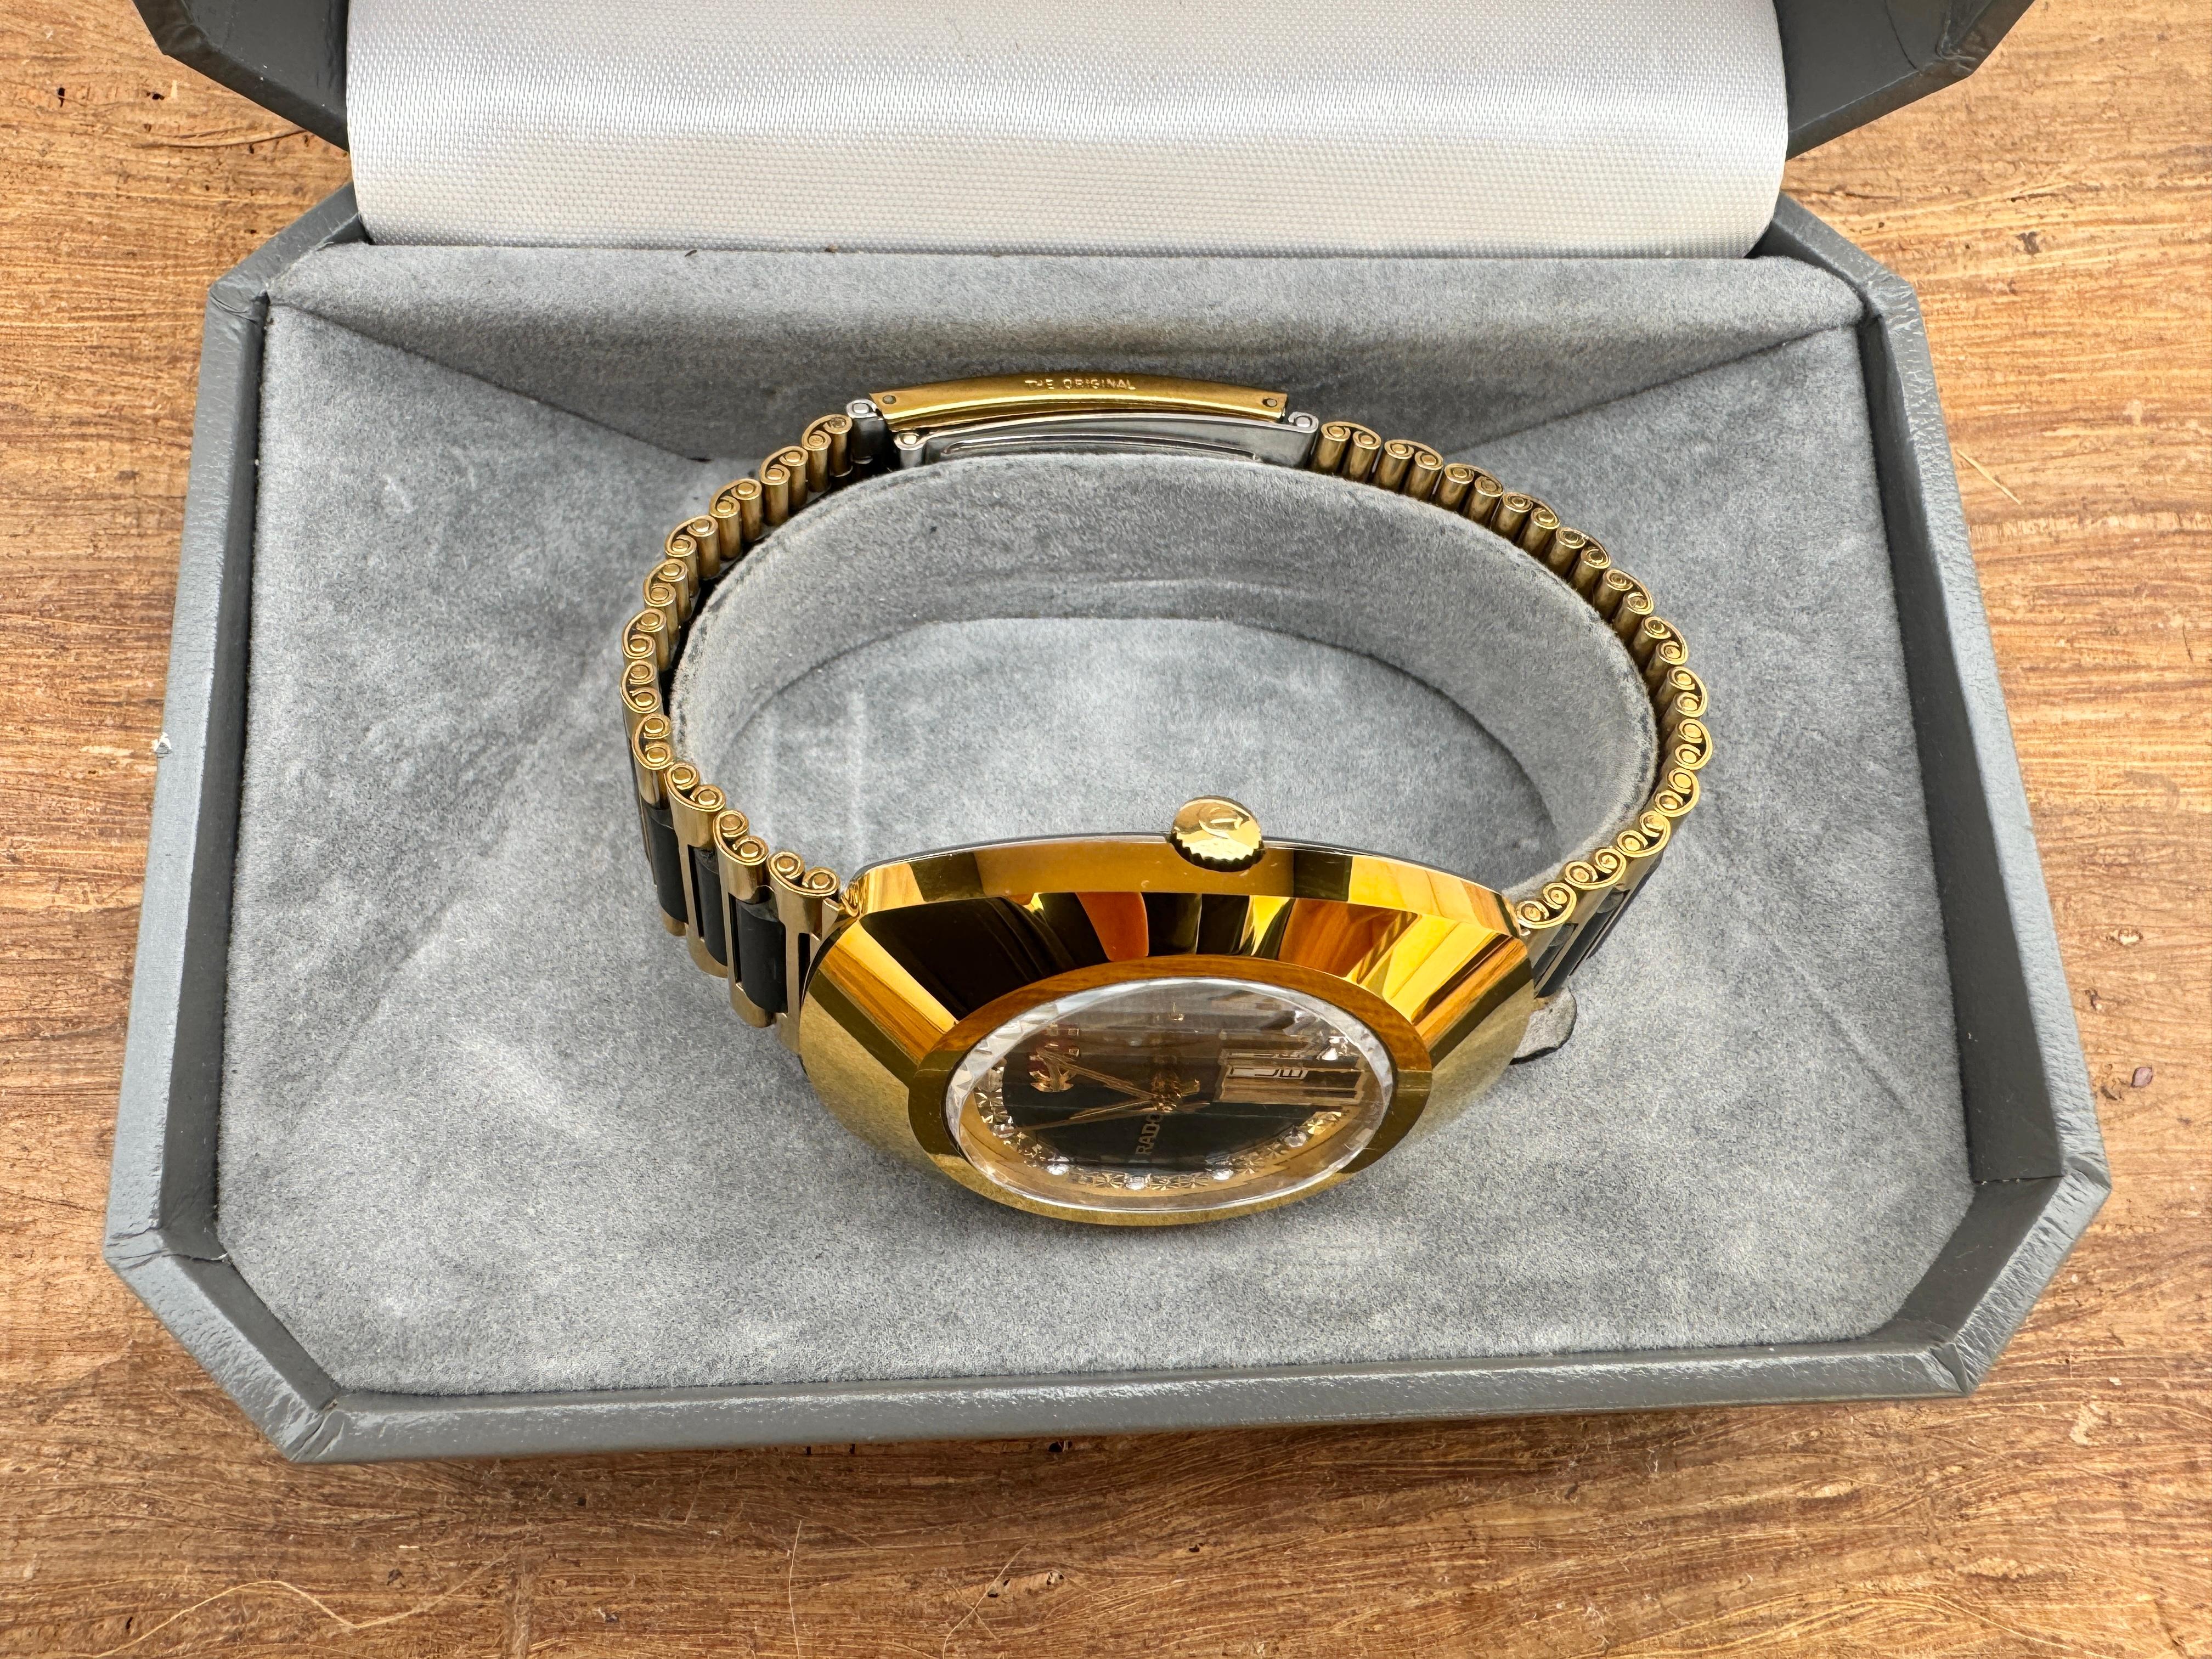 Rado Diastar 636.0313.3 Rare Dial Watch Boxed For Sale 2